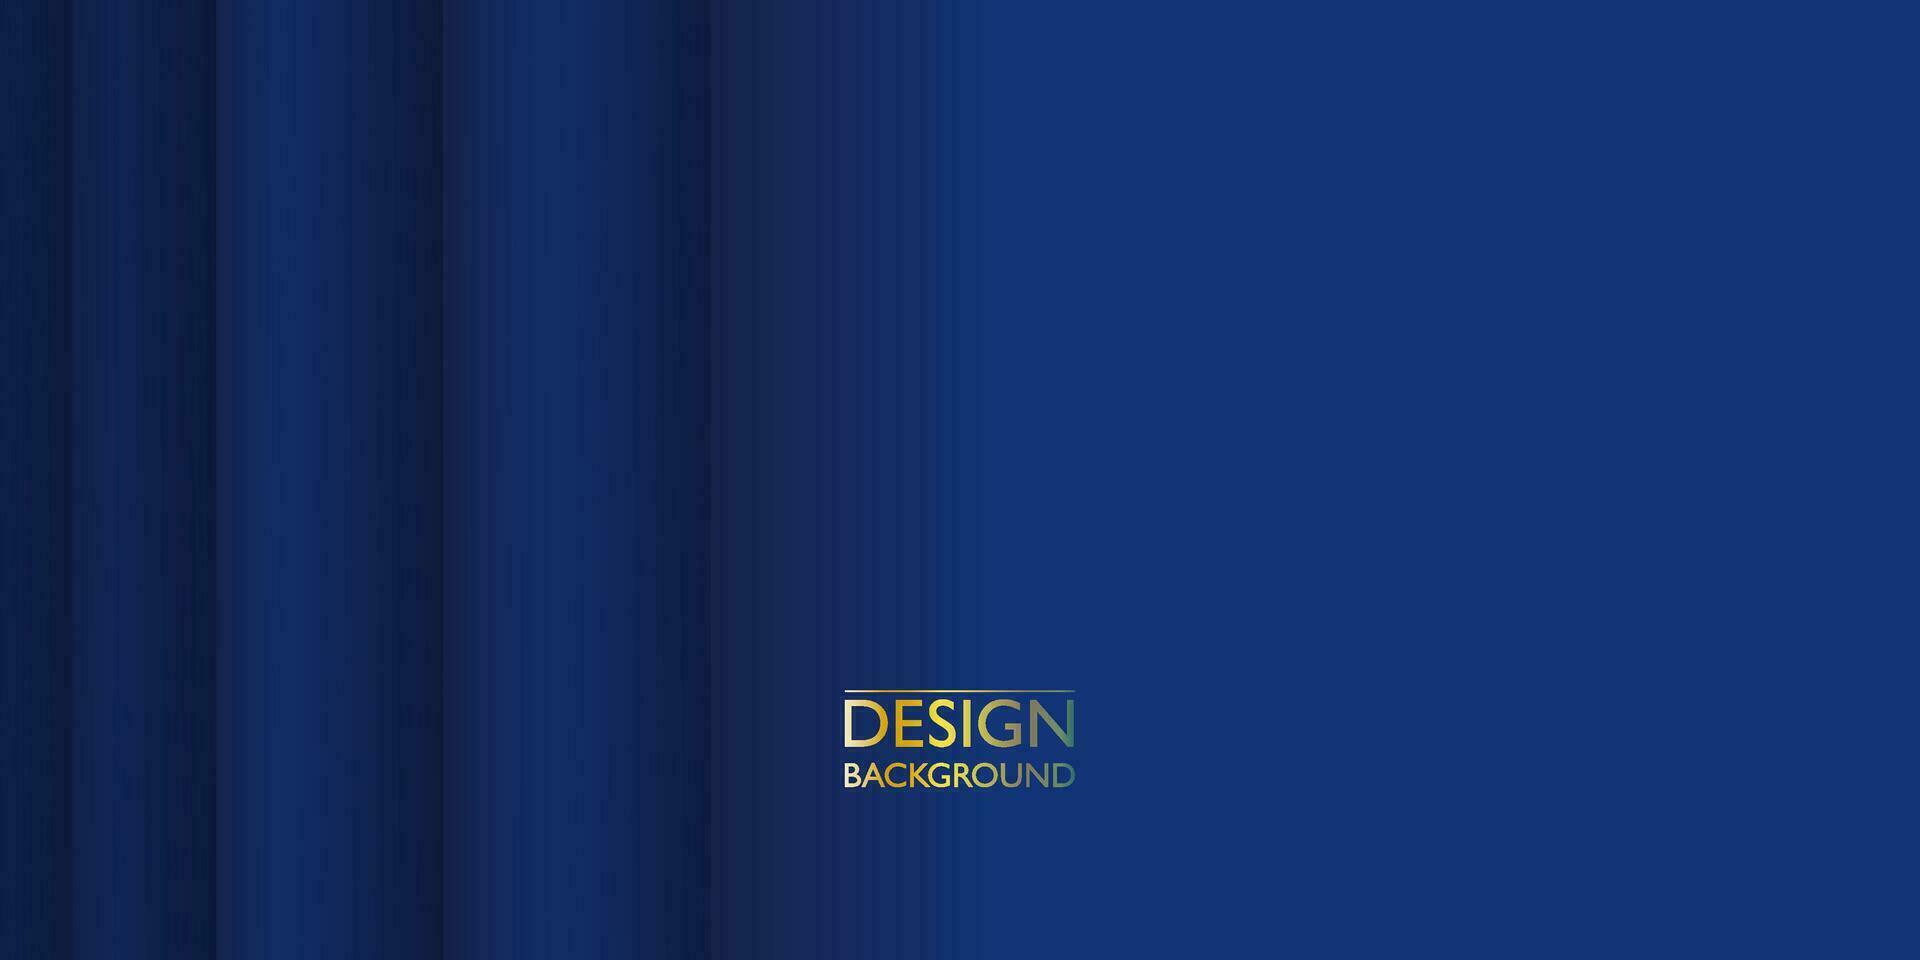 abstrakt Luxus Gold Blau Vorlage Design. zeitgenössisch Stil Grafik. Vektor Illustration zum Präsentation, Banner, Abdeckung, Netz, Flyer, Karte, Poster, Hintergrund, Textur, gleiten, Sozial Medien